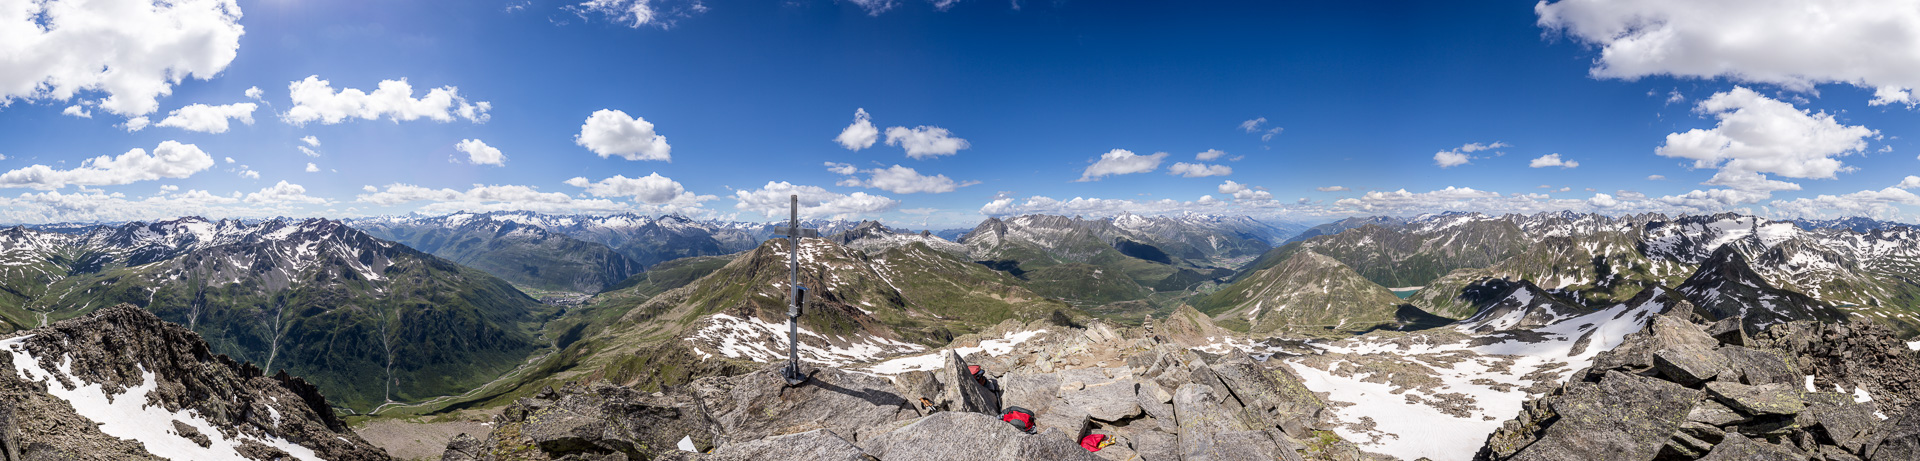 Außergewöhnlich schönes und instruktives Panorama mitten in der Zentralschweiz.